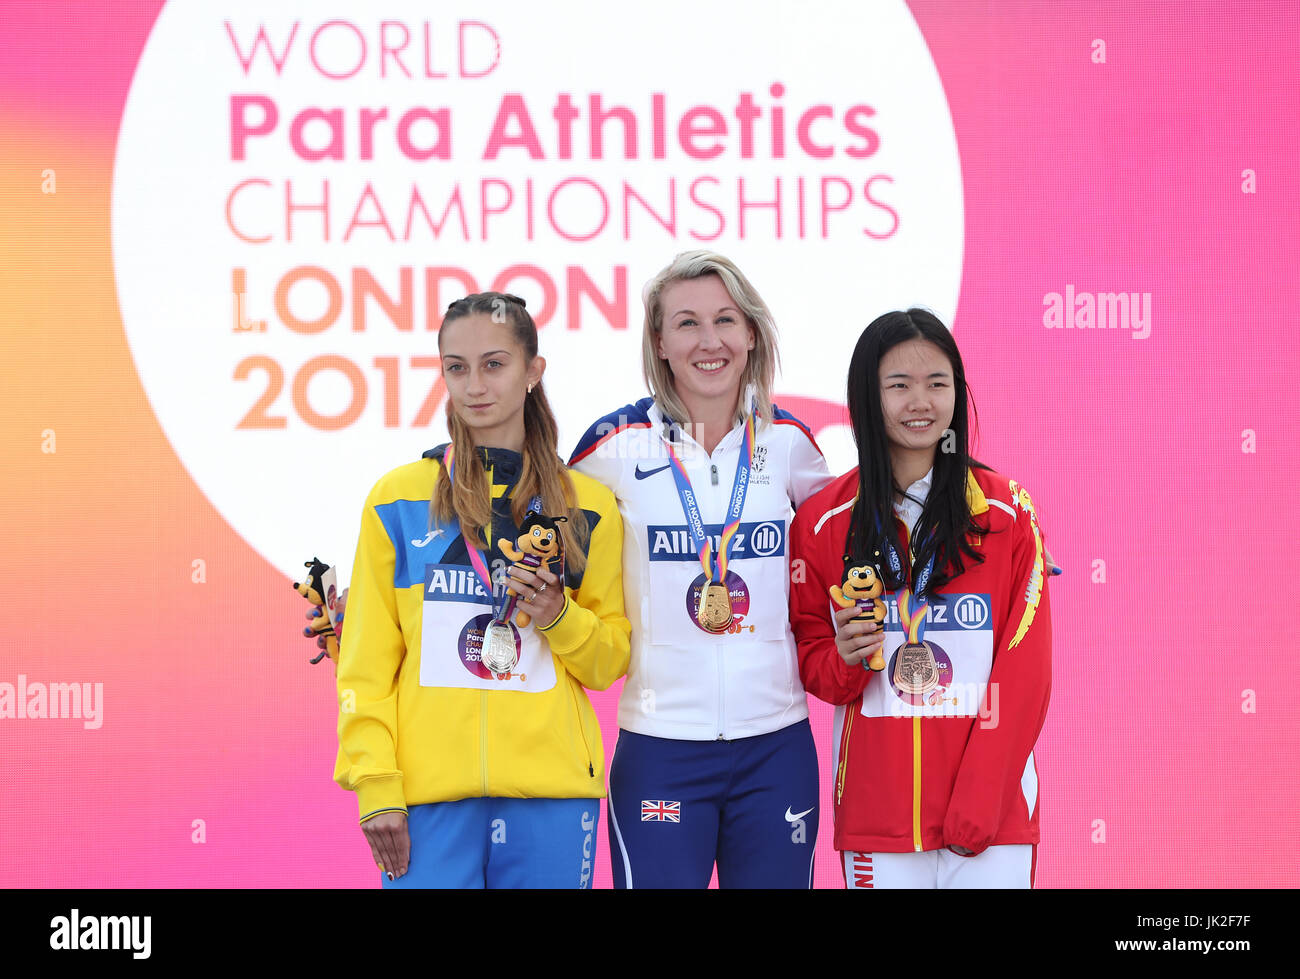 Großbritanniens Georgina Hermitage (Mitte) mit ihrer Goldmedaille, mit der Ukraine Natalia Kobzar (links) und Chinas Fenfen Jiang nach der Frauen 400 m-Finale T37 tagsüber acht der 2017 Para Leichtathletik-Weltmeisterschaften in London Stadion. Stockfoto